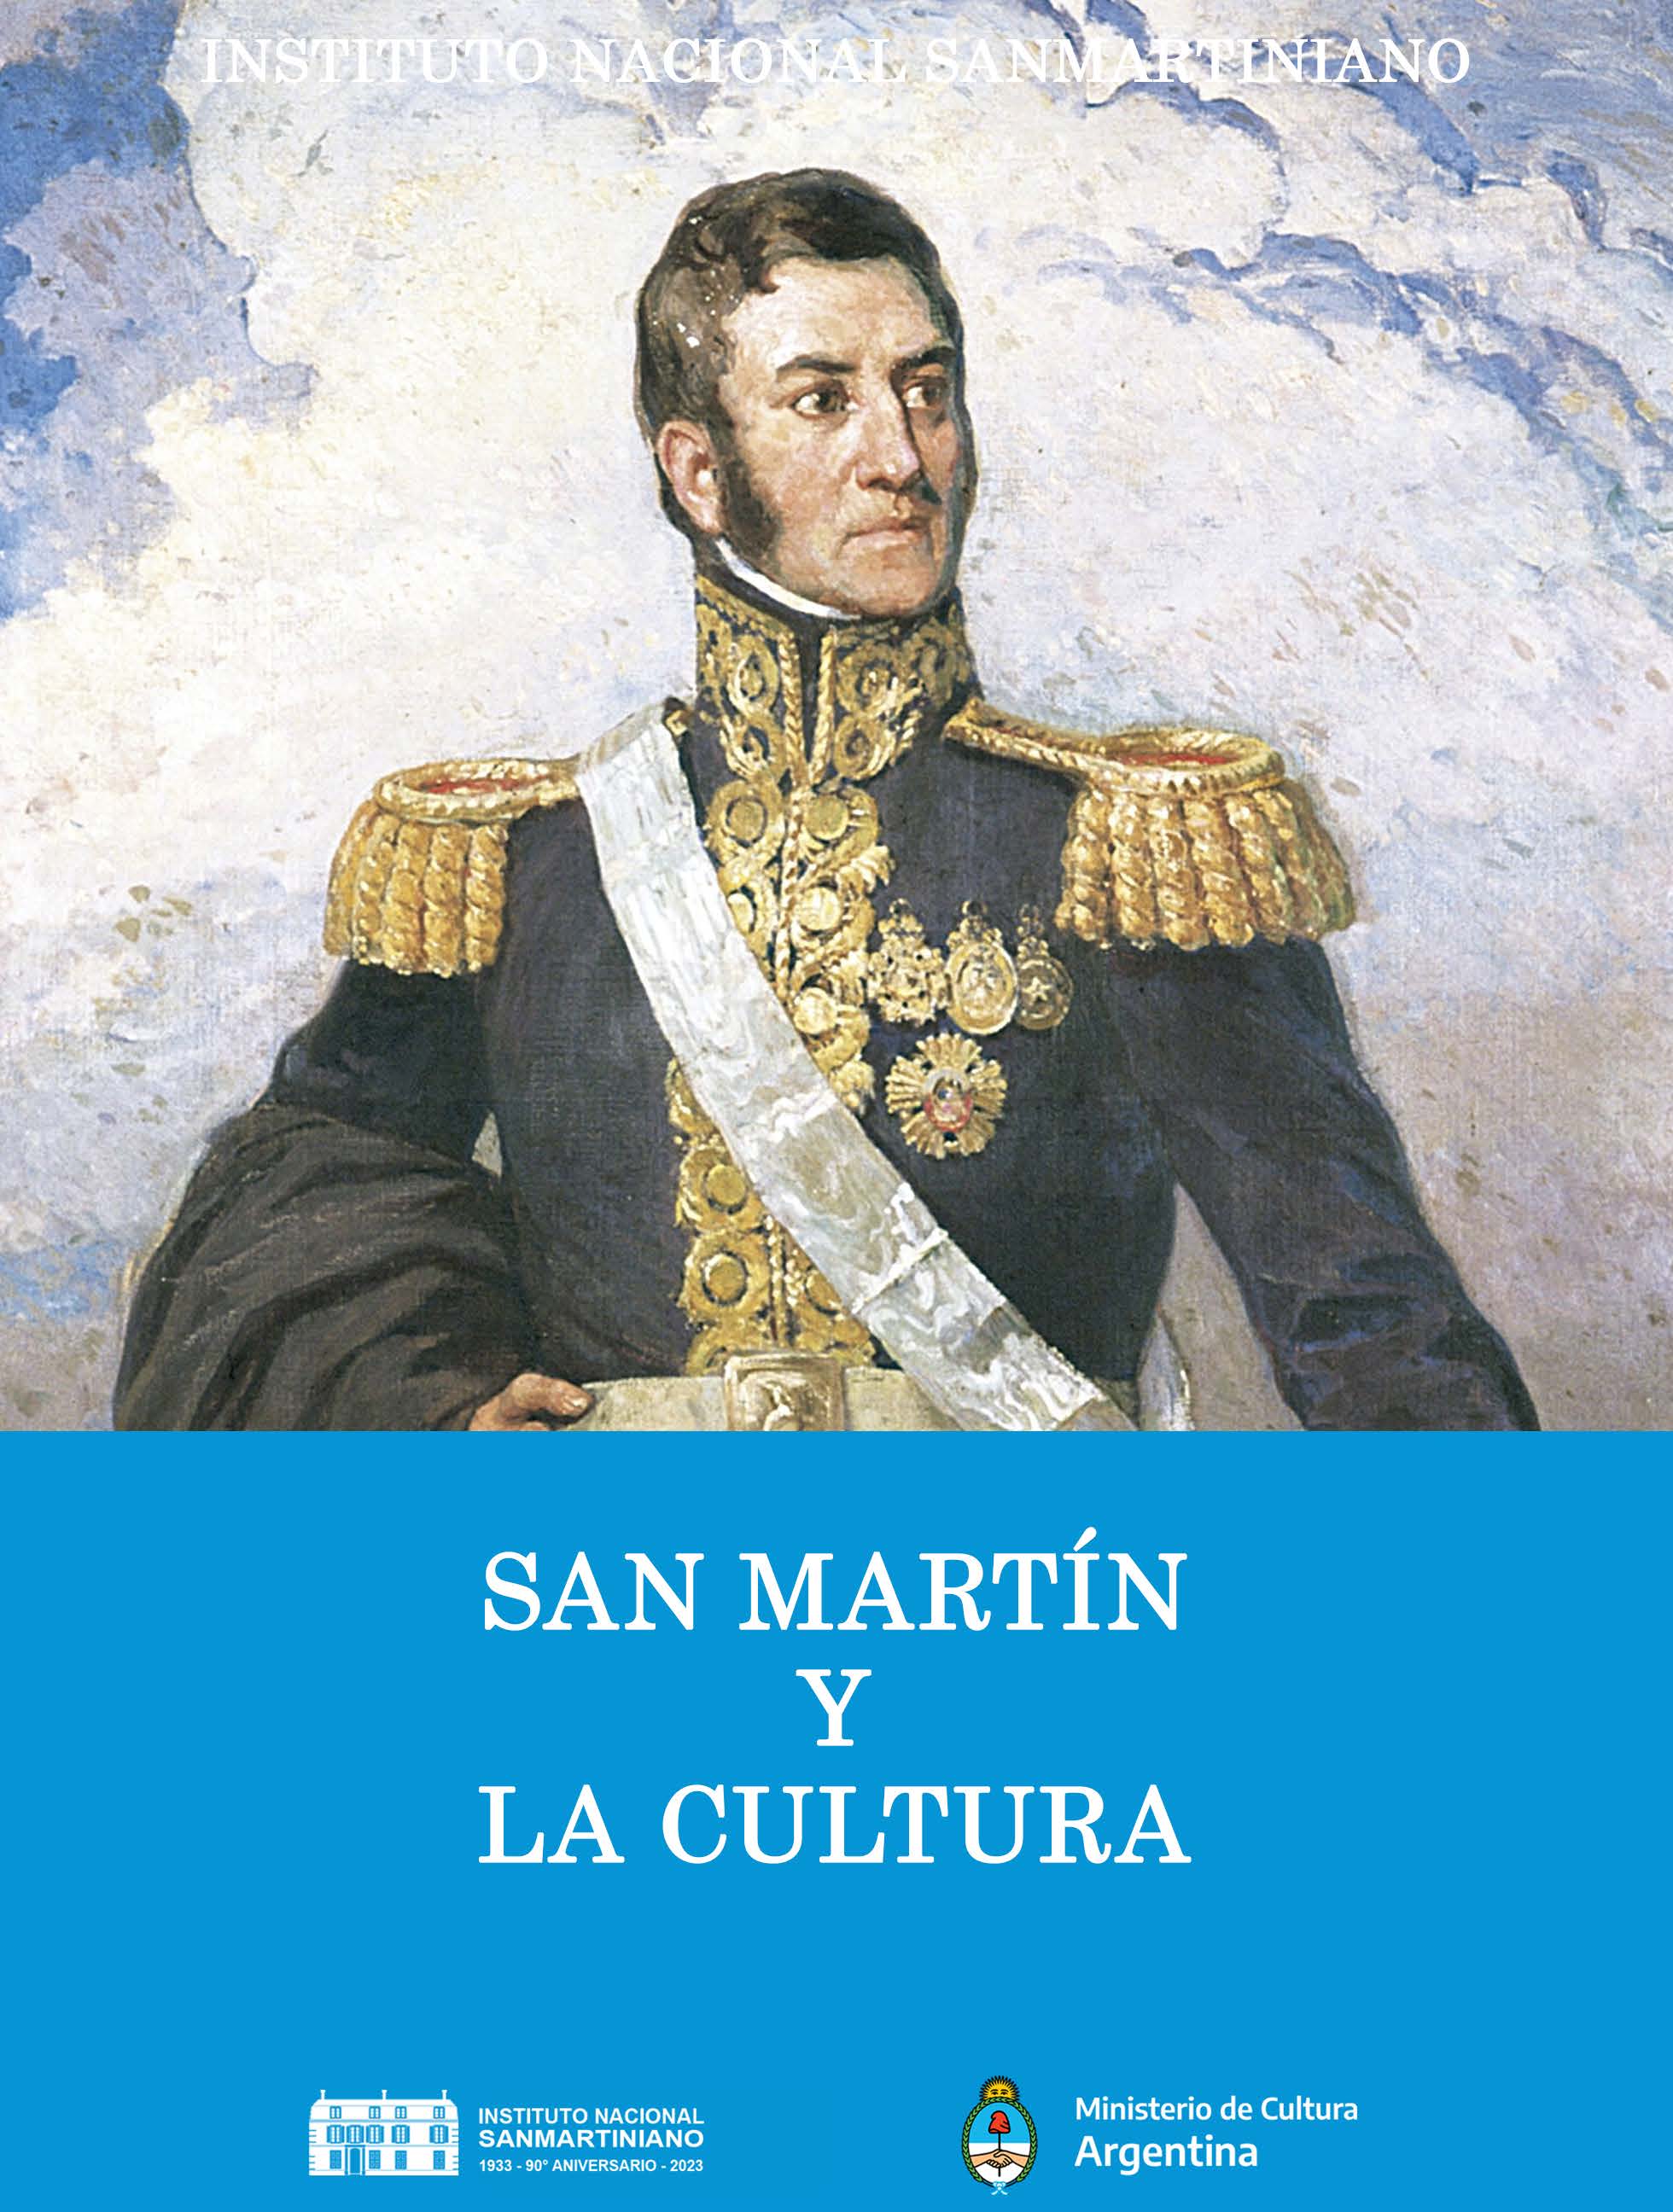 AA.VV. "San Martín y la Cultura". Instituto Nacional Sanmartiniano. Buenos Aires, 2023